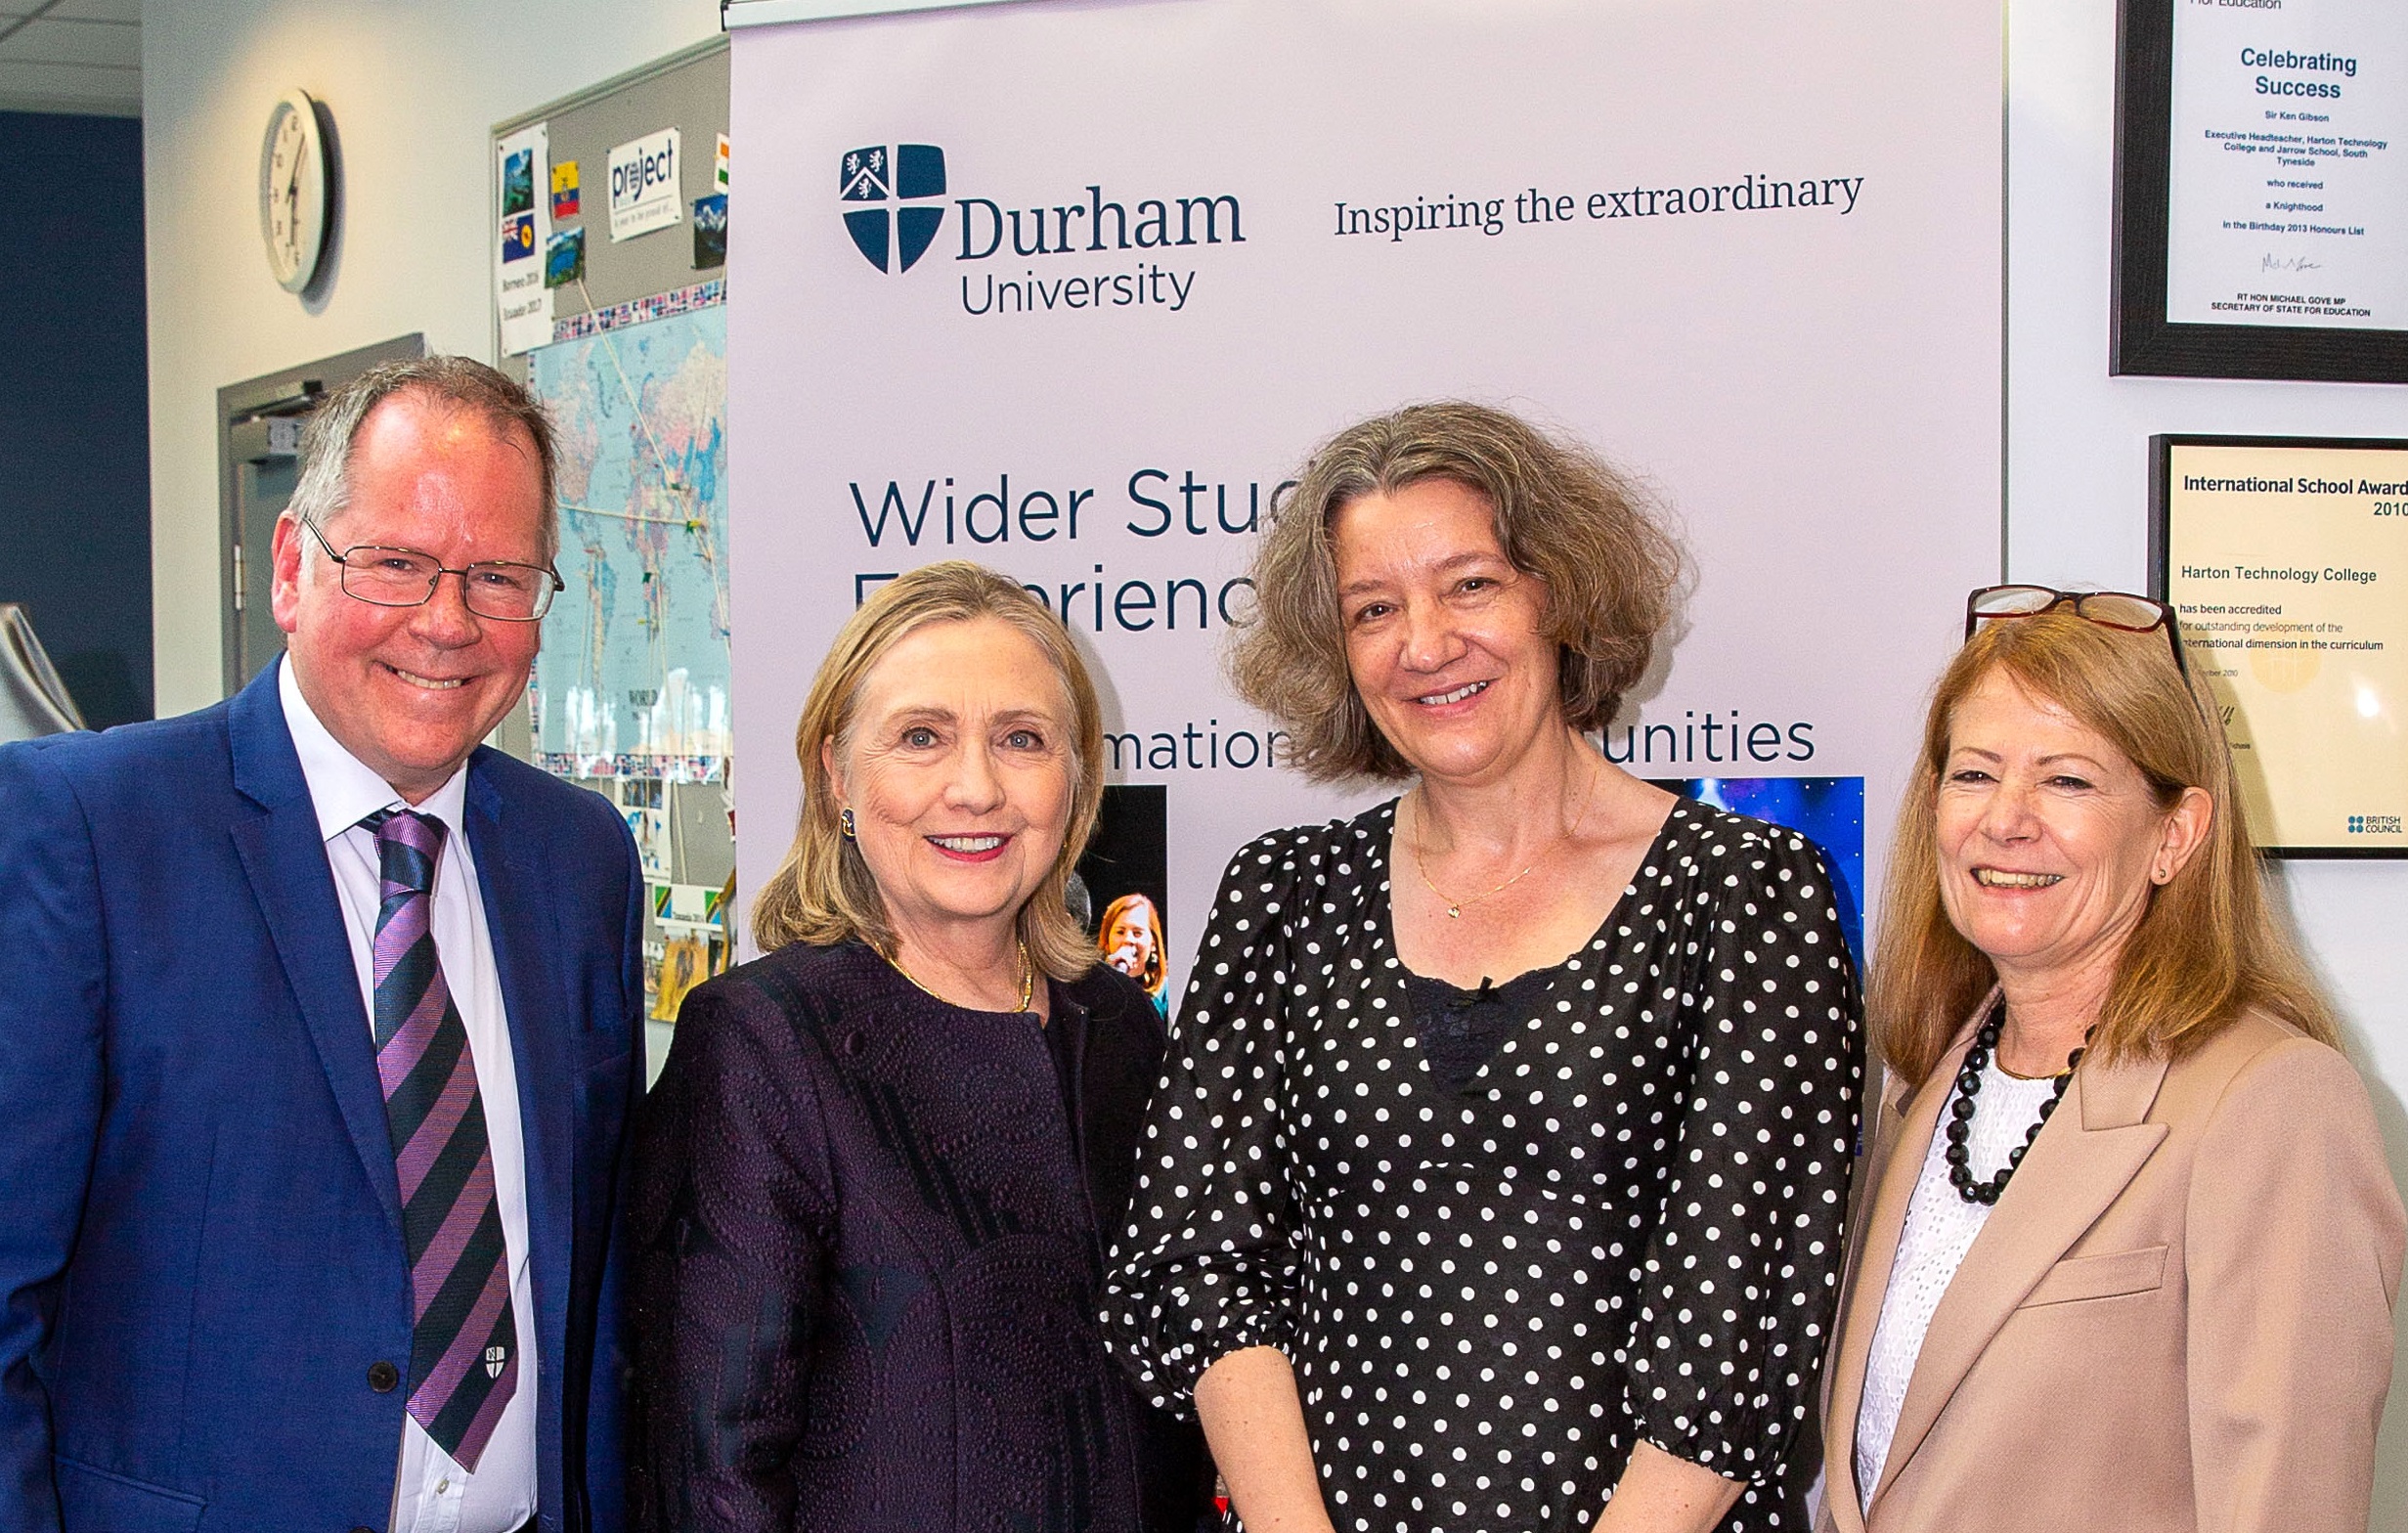 Chair of Council Joe Docherty, Vice-Chancellor Karen O'Brien and Pro-Vice-Chancellor Global Claire O'Malley meet Hillary Clinton